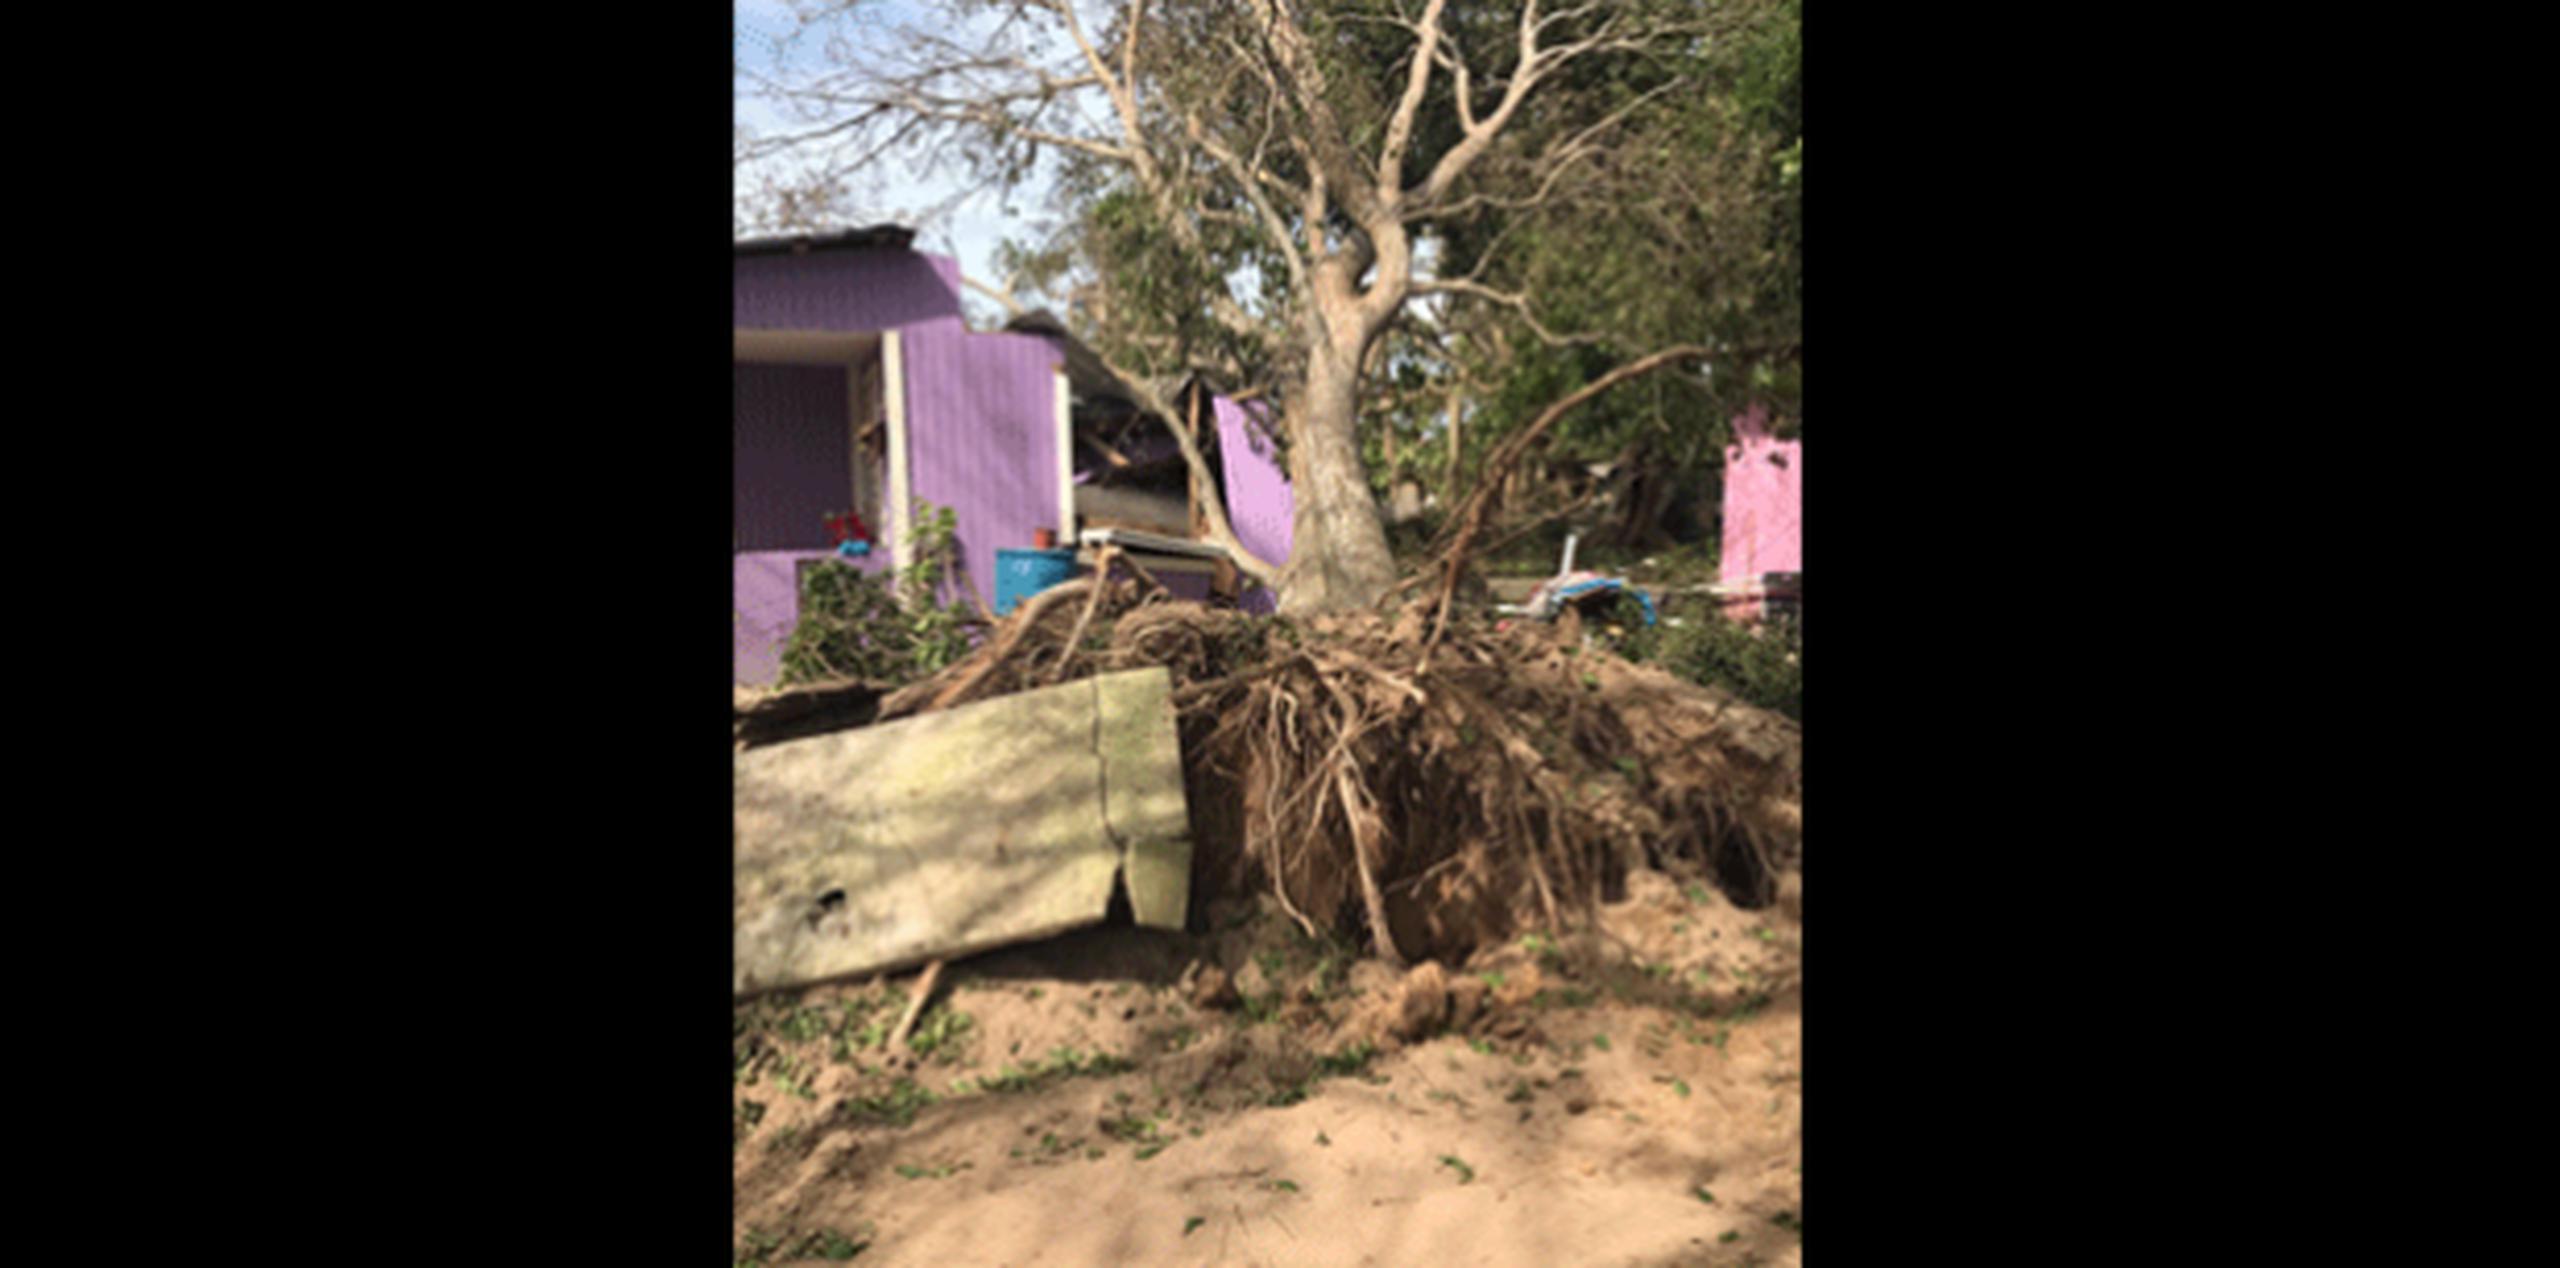 En Luquillo se han reportado 60 casas destruidas totalmente por el paso de Irma por la Isla. (Suministrada)

